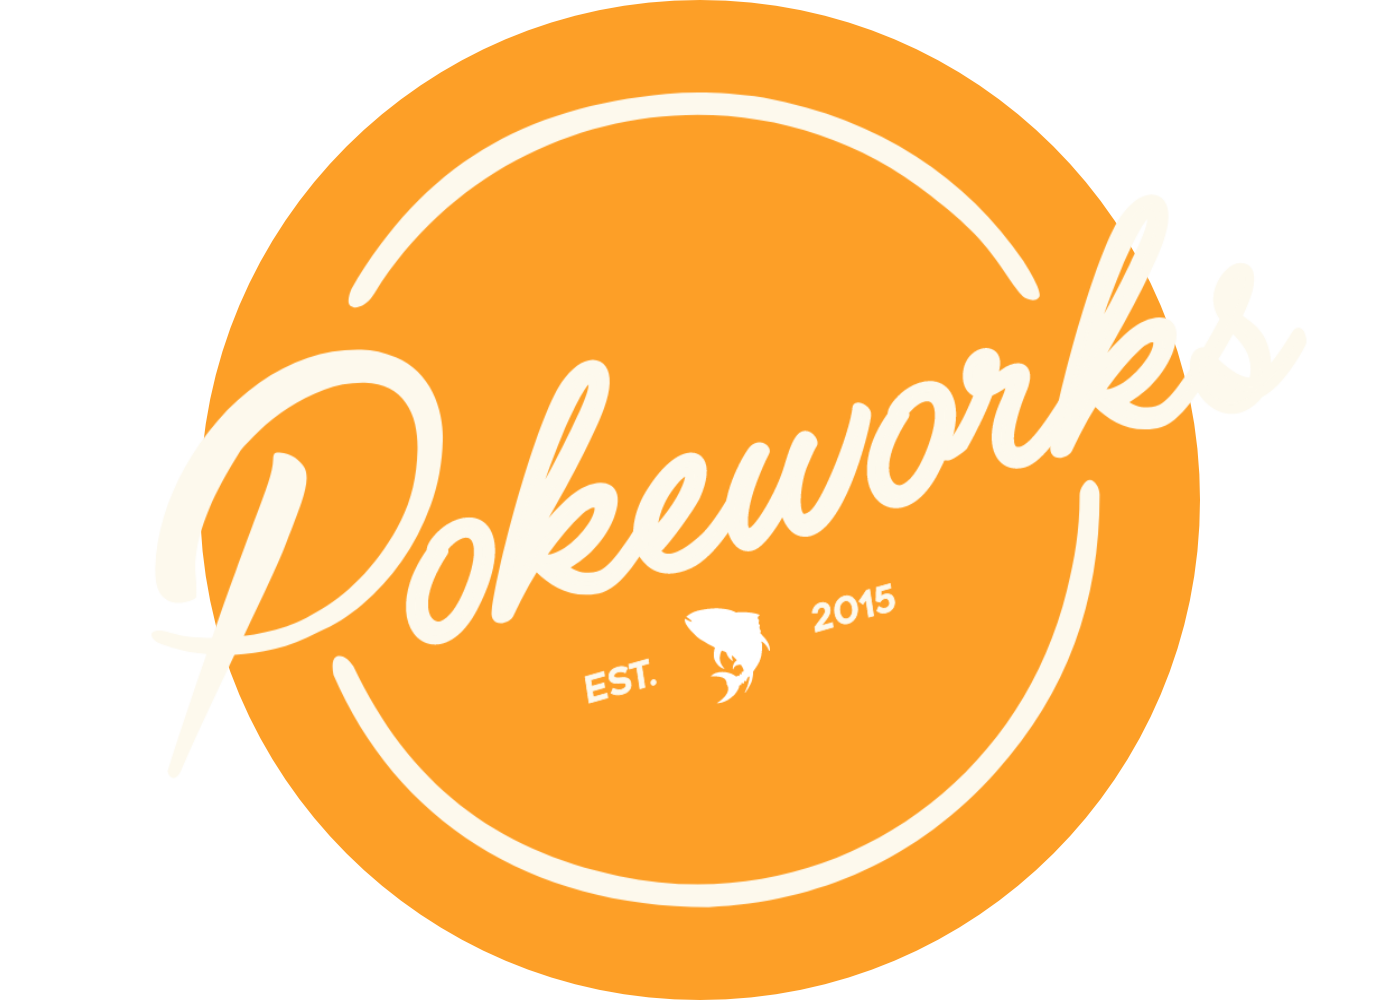 Pokeworks Circle Logo